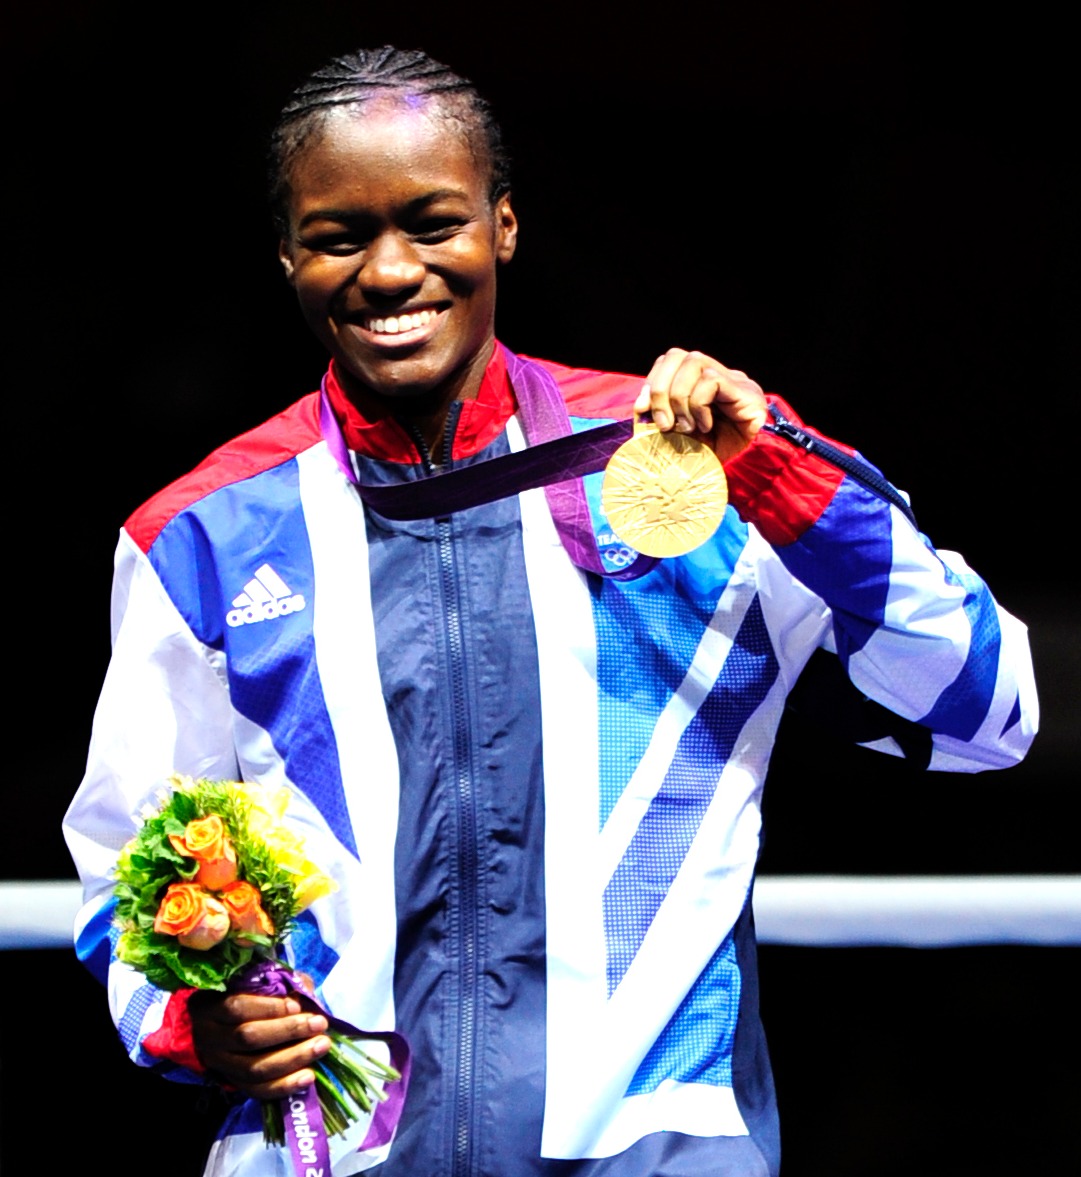 Nicola war die erste Frau, die bei den Spielen in London 2012 olympisches Gold im Boxen gewann